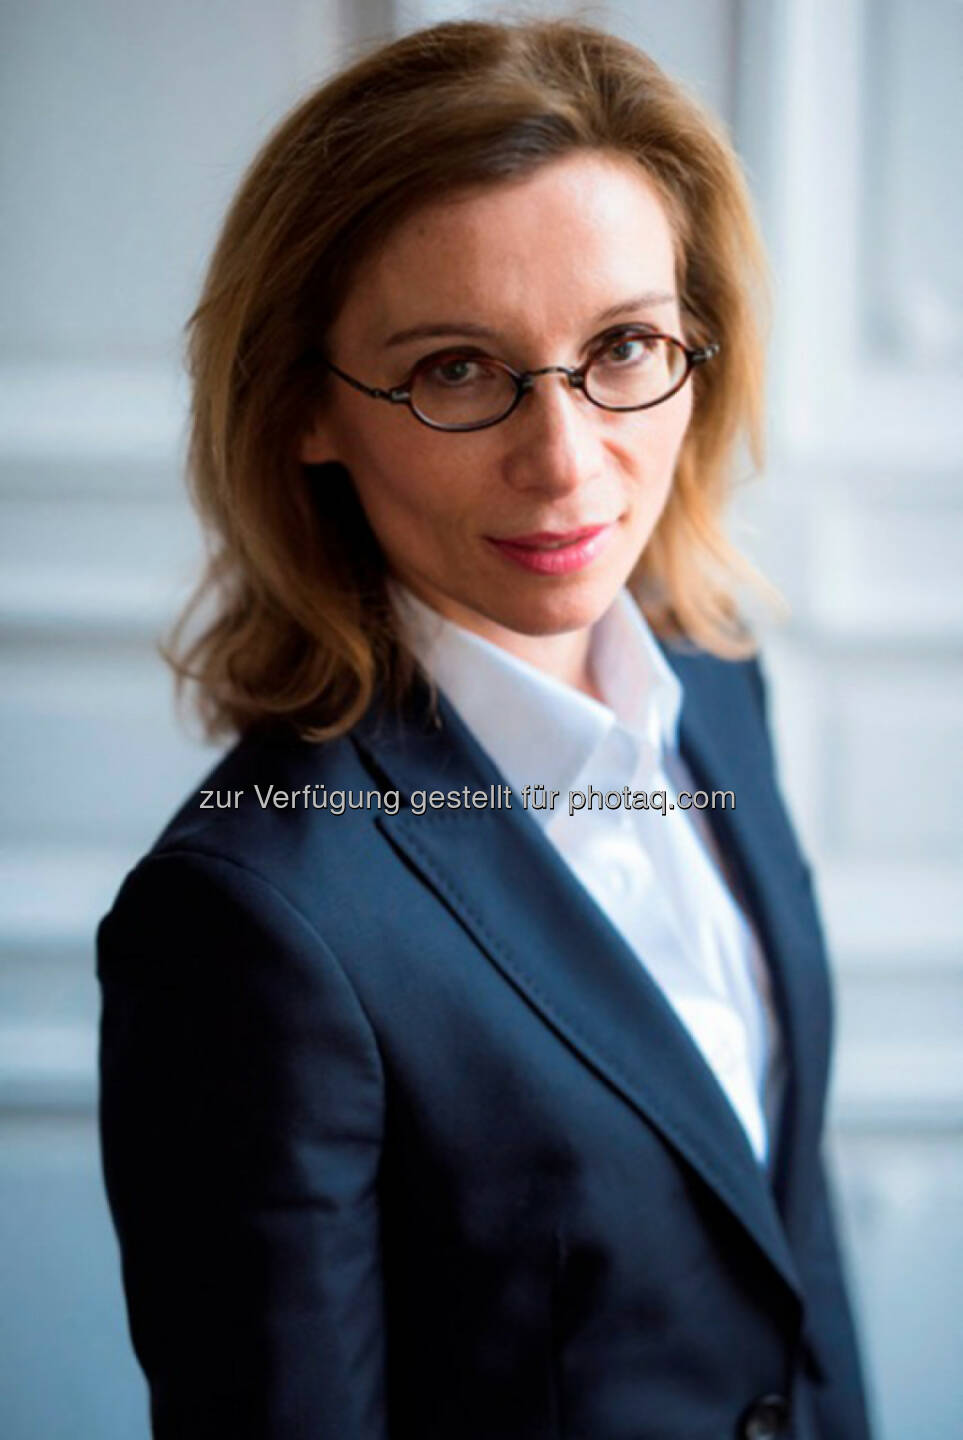 Mathilde Lemoine wird ab dem 7. Januar 2016 die volkswirtschaftliche Abteilung der Edmond de Rothschild-Gruppe leiten.